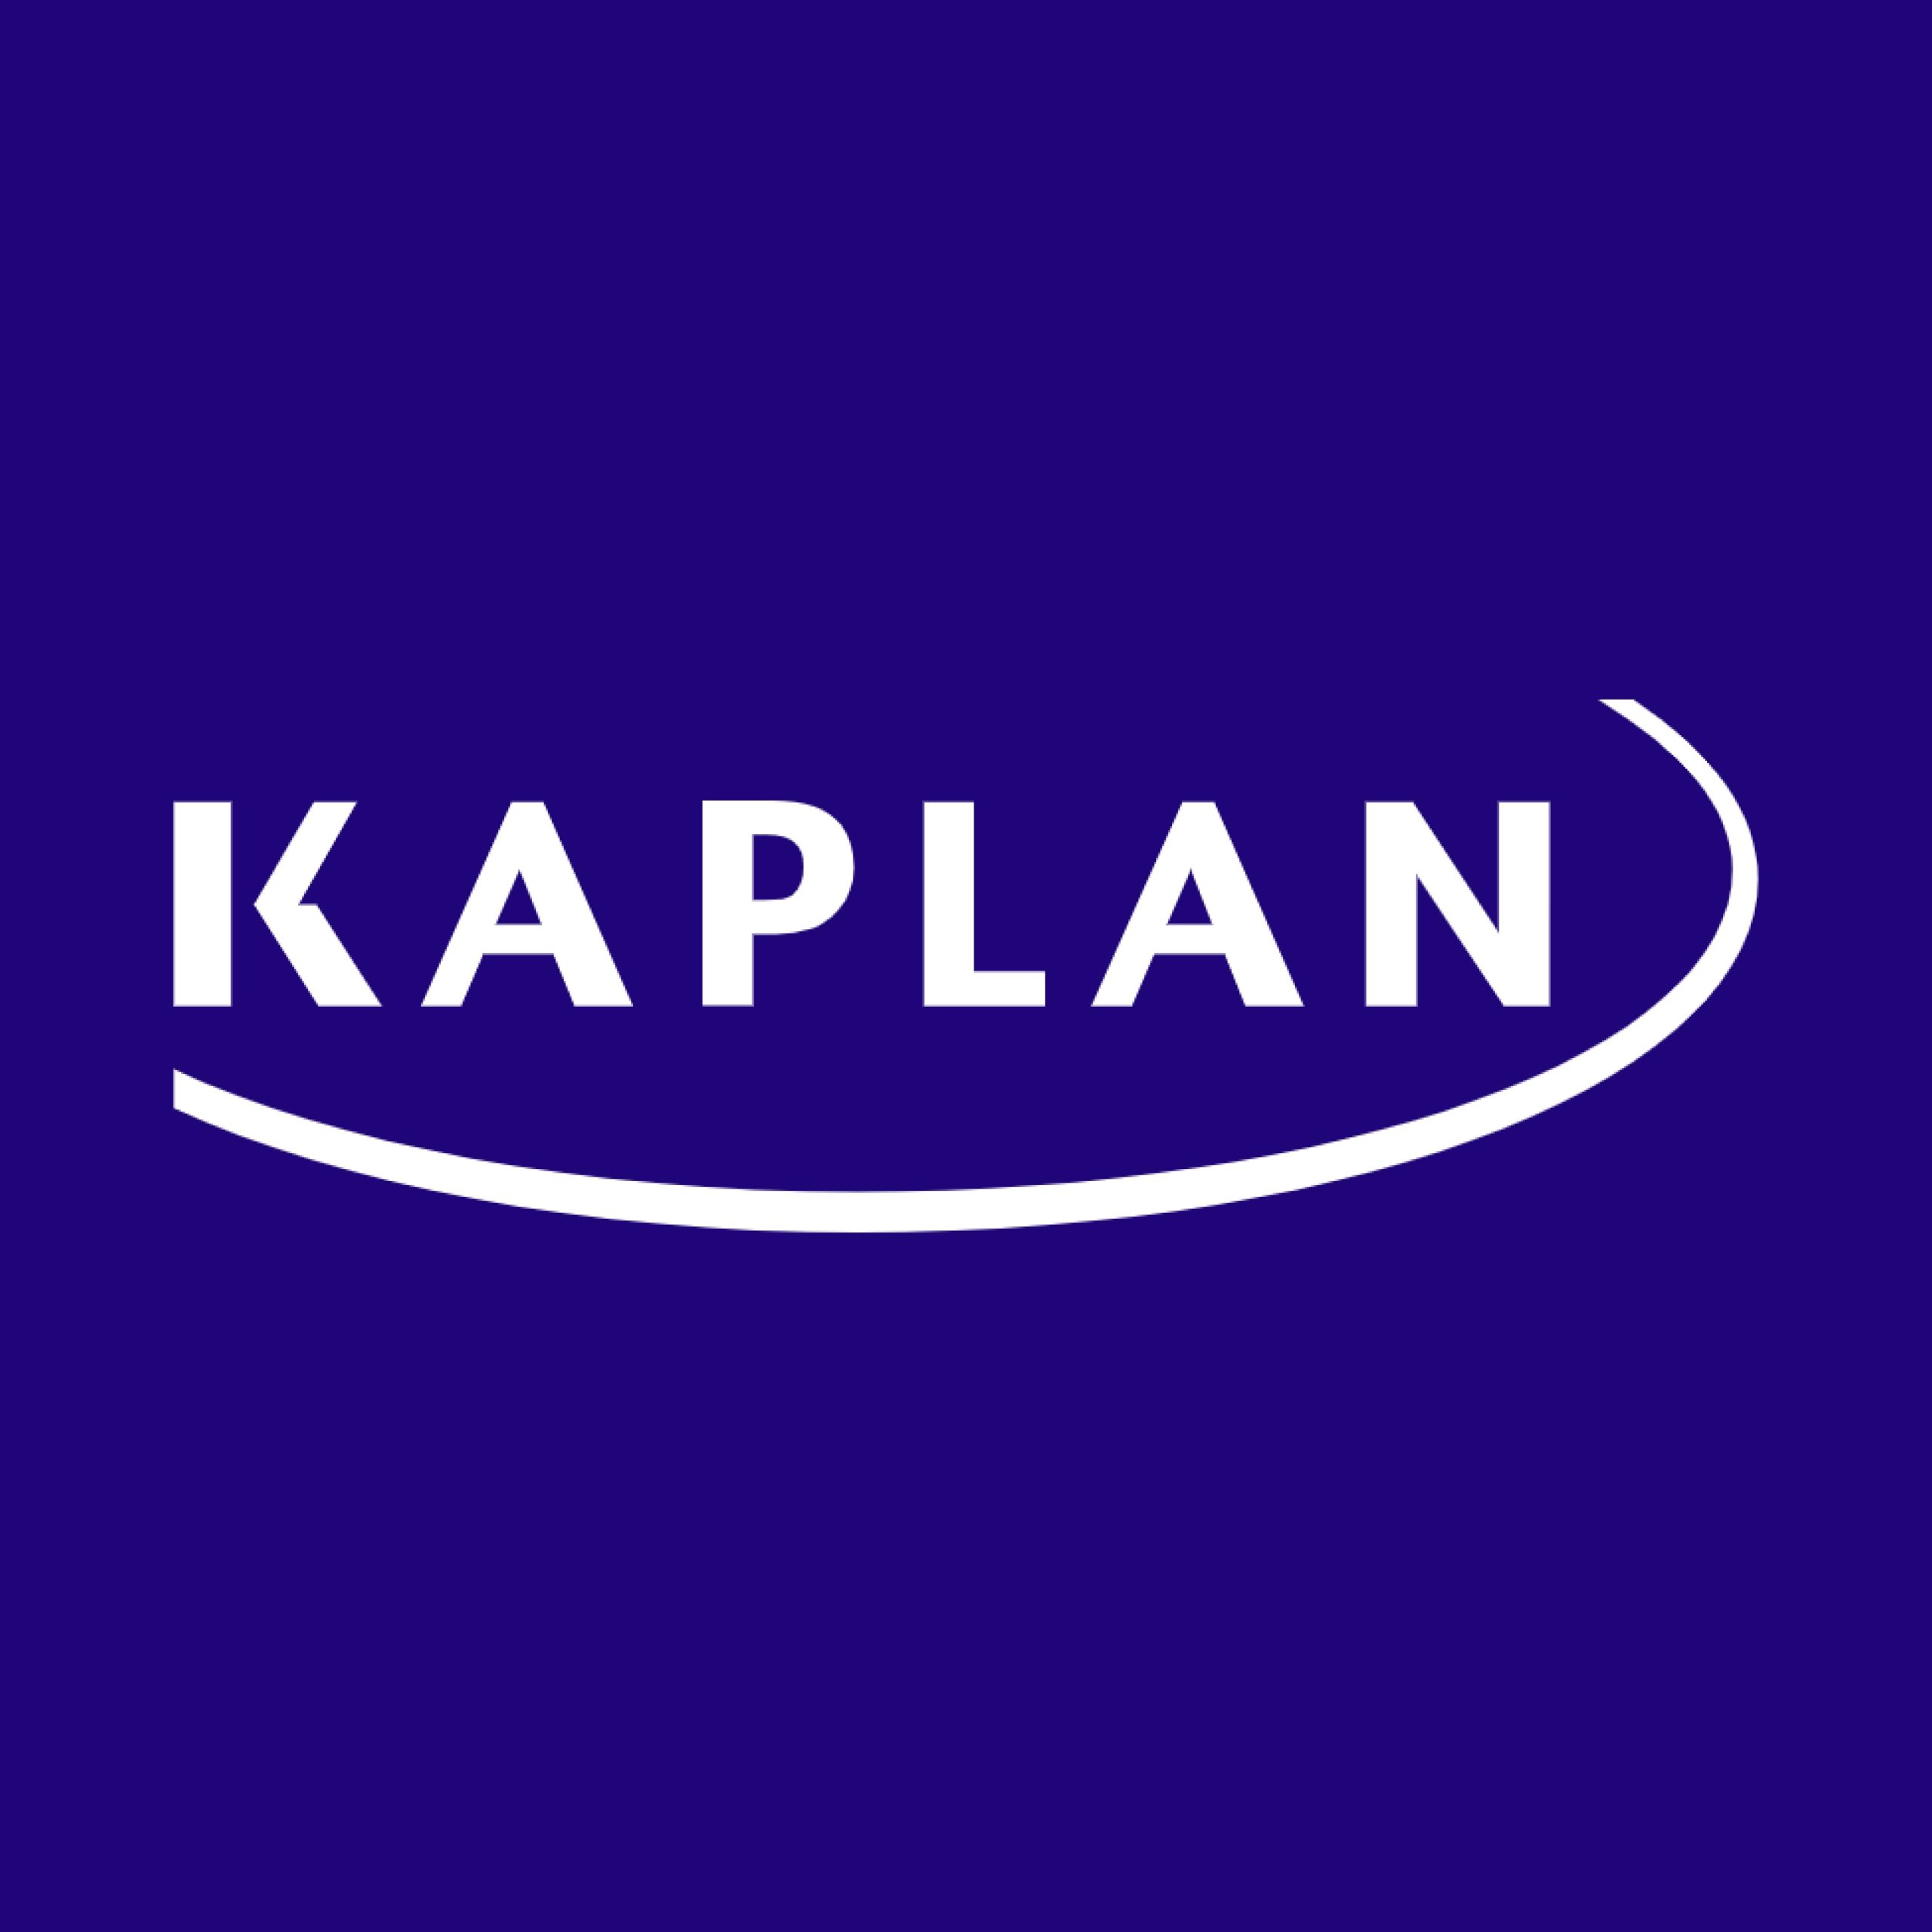 Kaplan Hong Kong